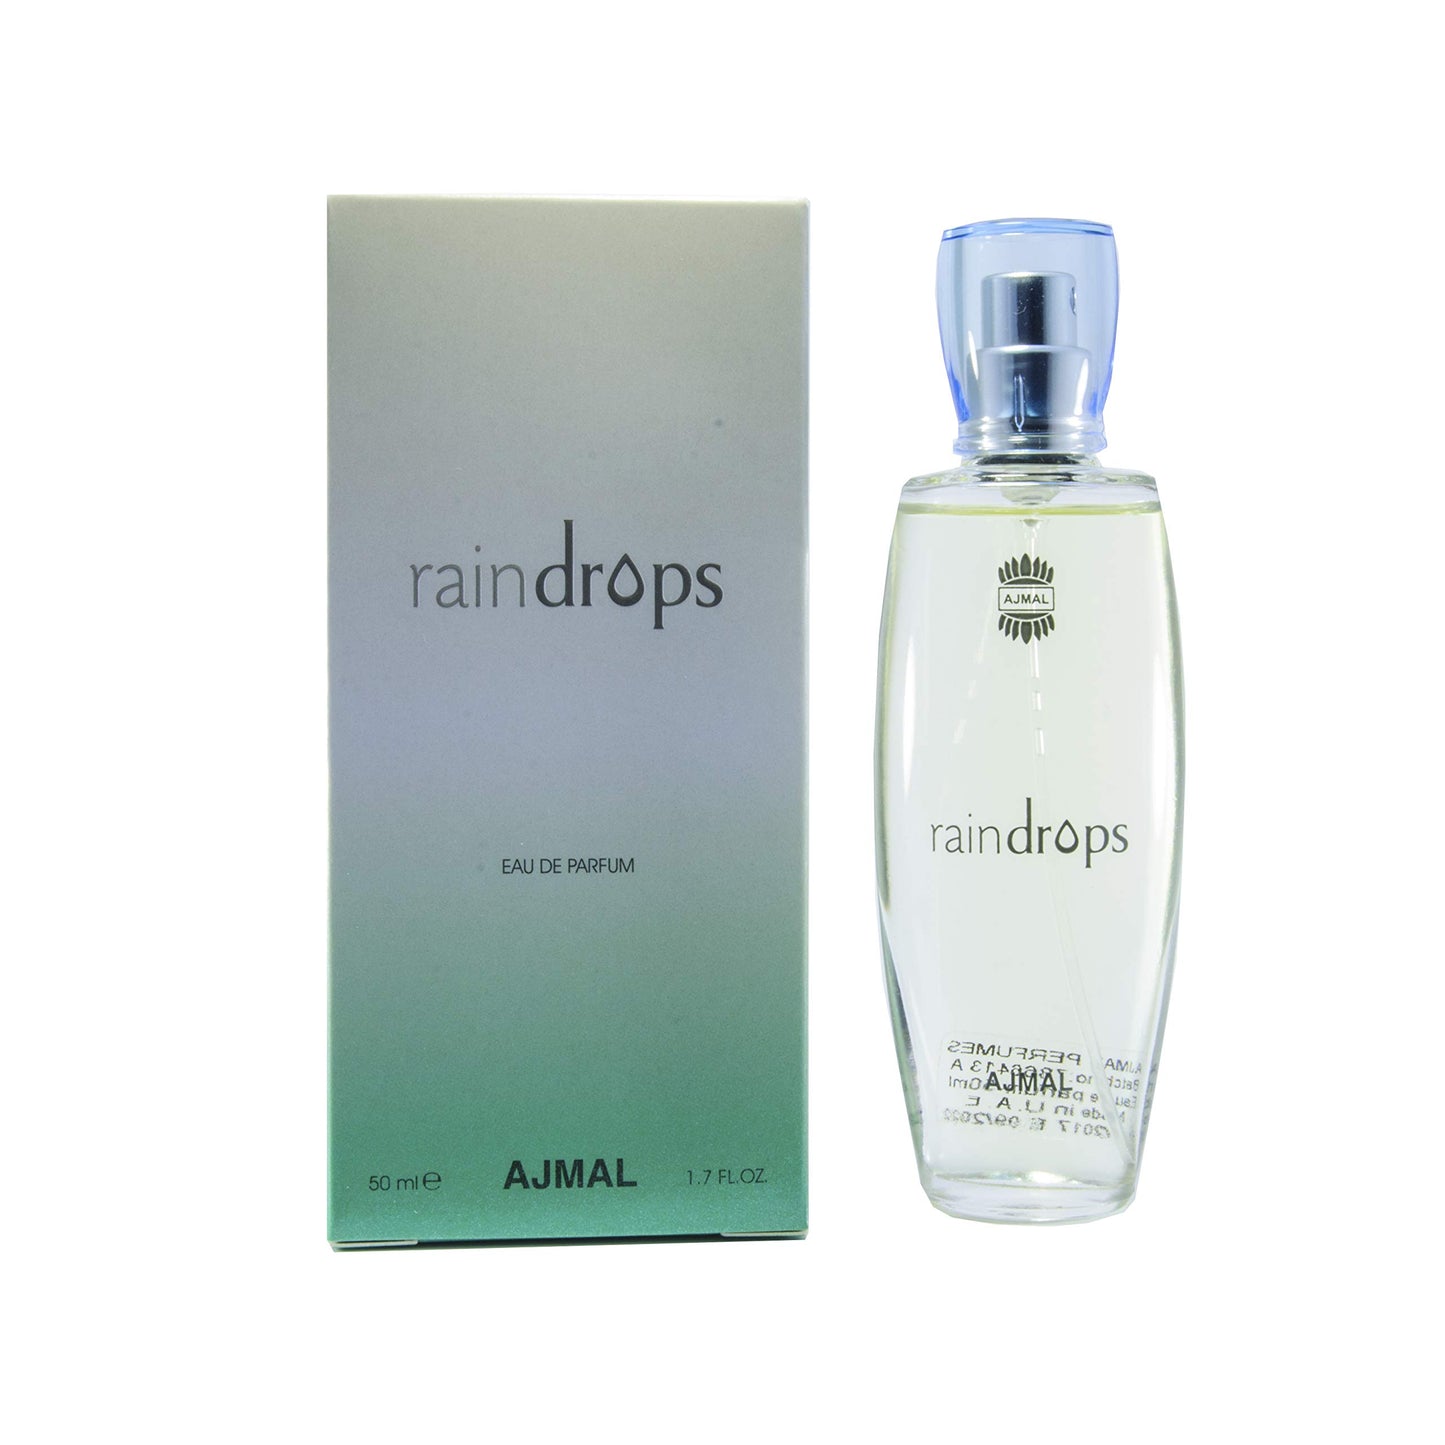 Raindrops - Eau De Parfum 50ml - For Women